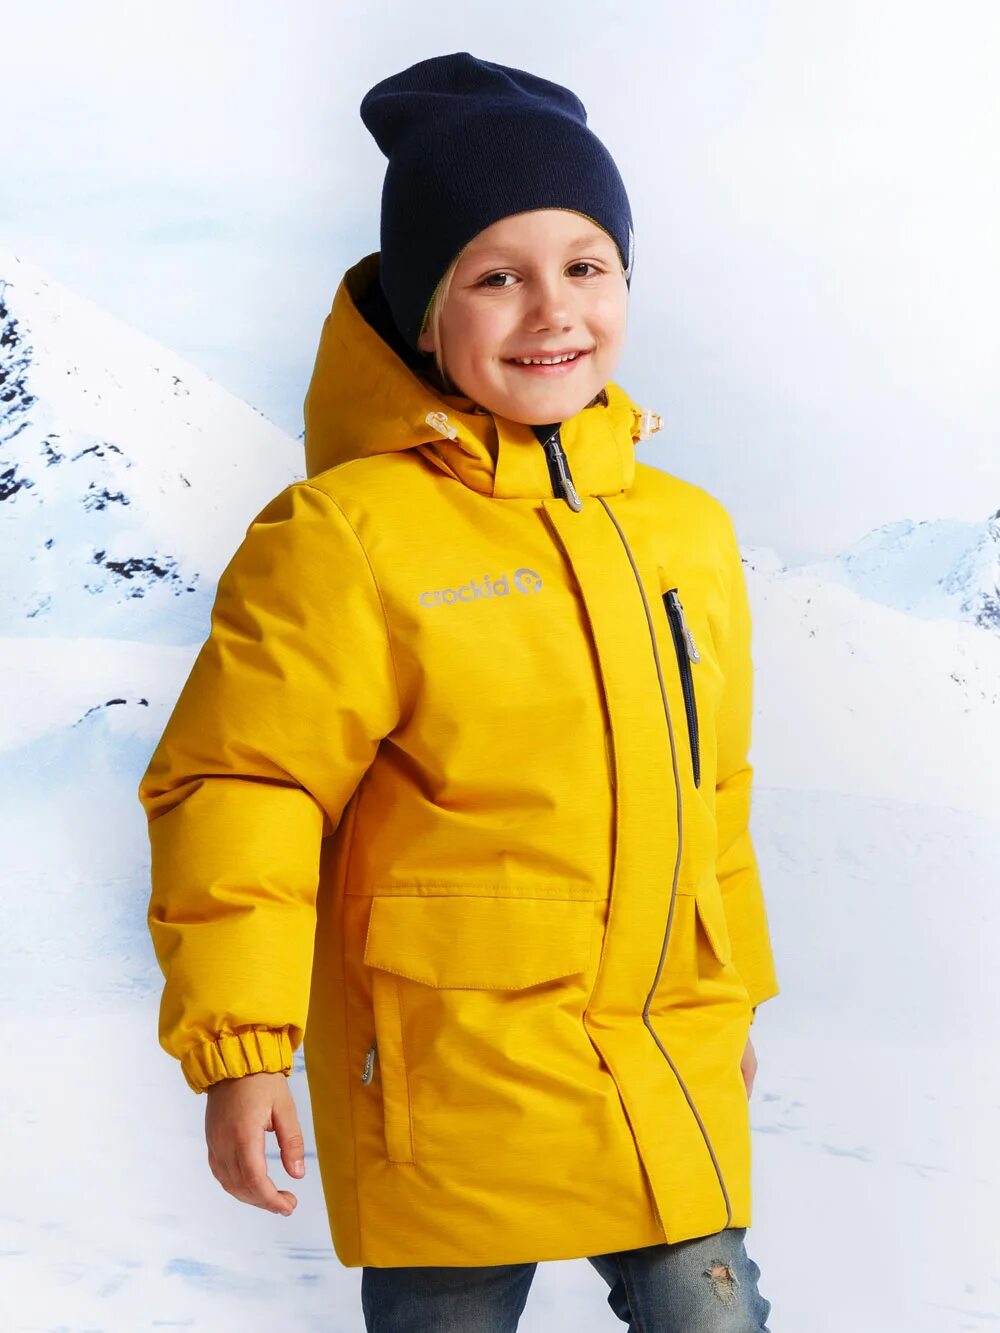 Желтая куртка для мальчика. Crockid куртка желтая зимняя. Crockid желтая куртка зима мальчик. Желтая куртка для мальчика Крокид зимняя 2021. Зимняя куртка Крокид желтая.